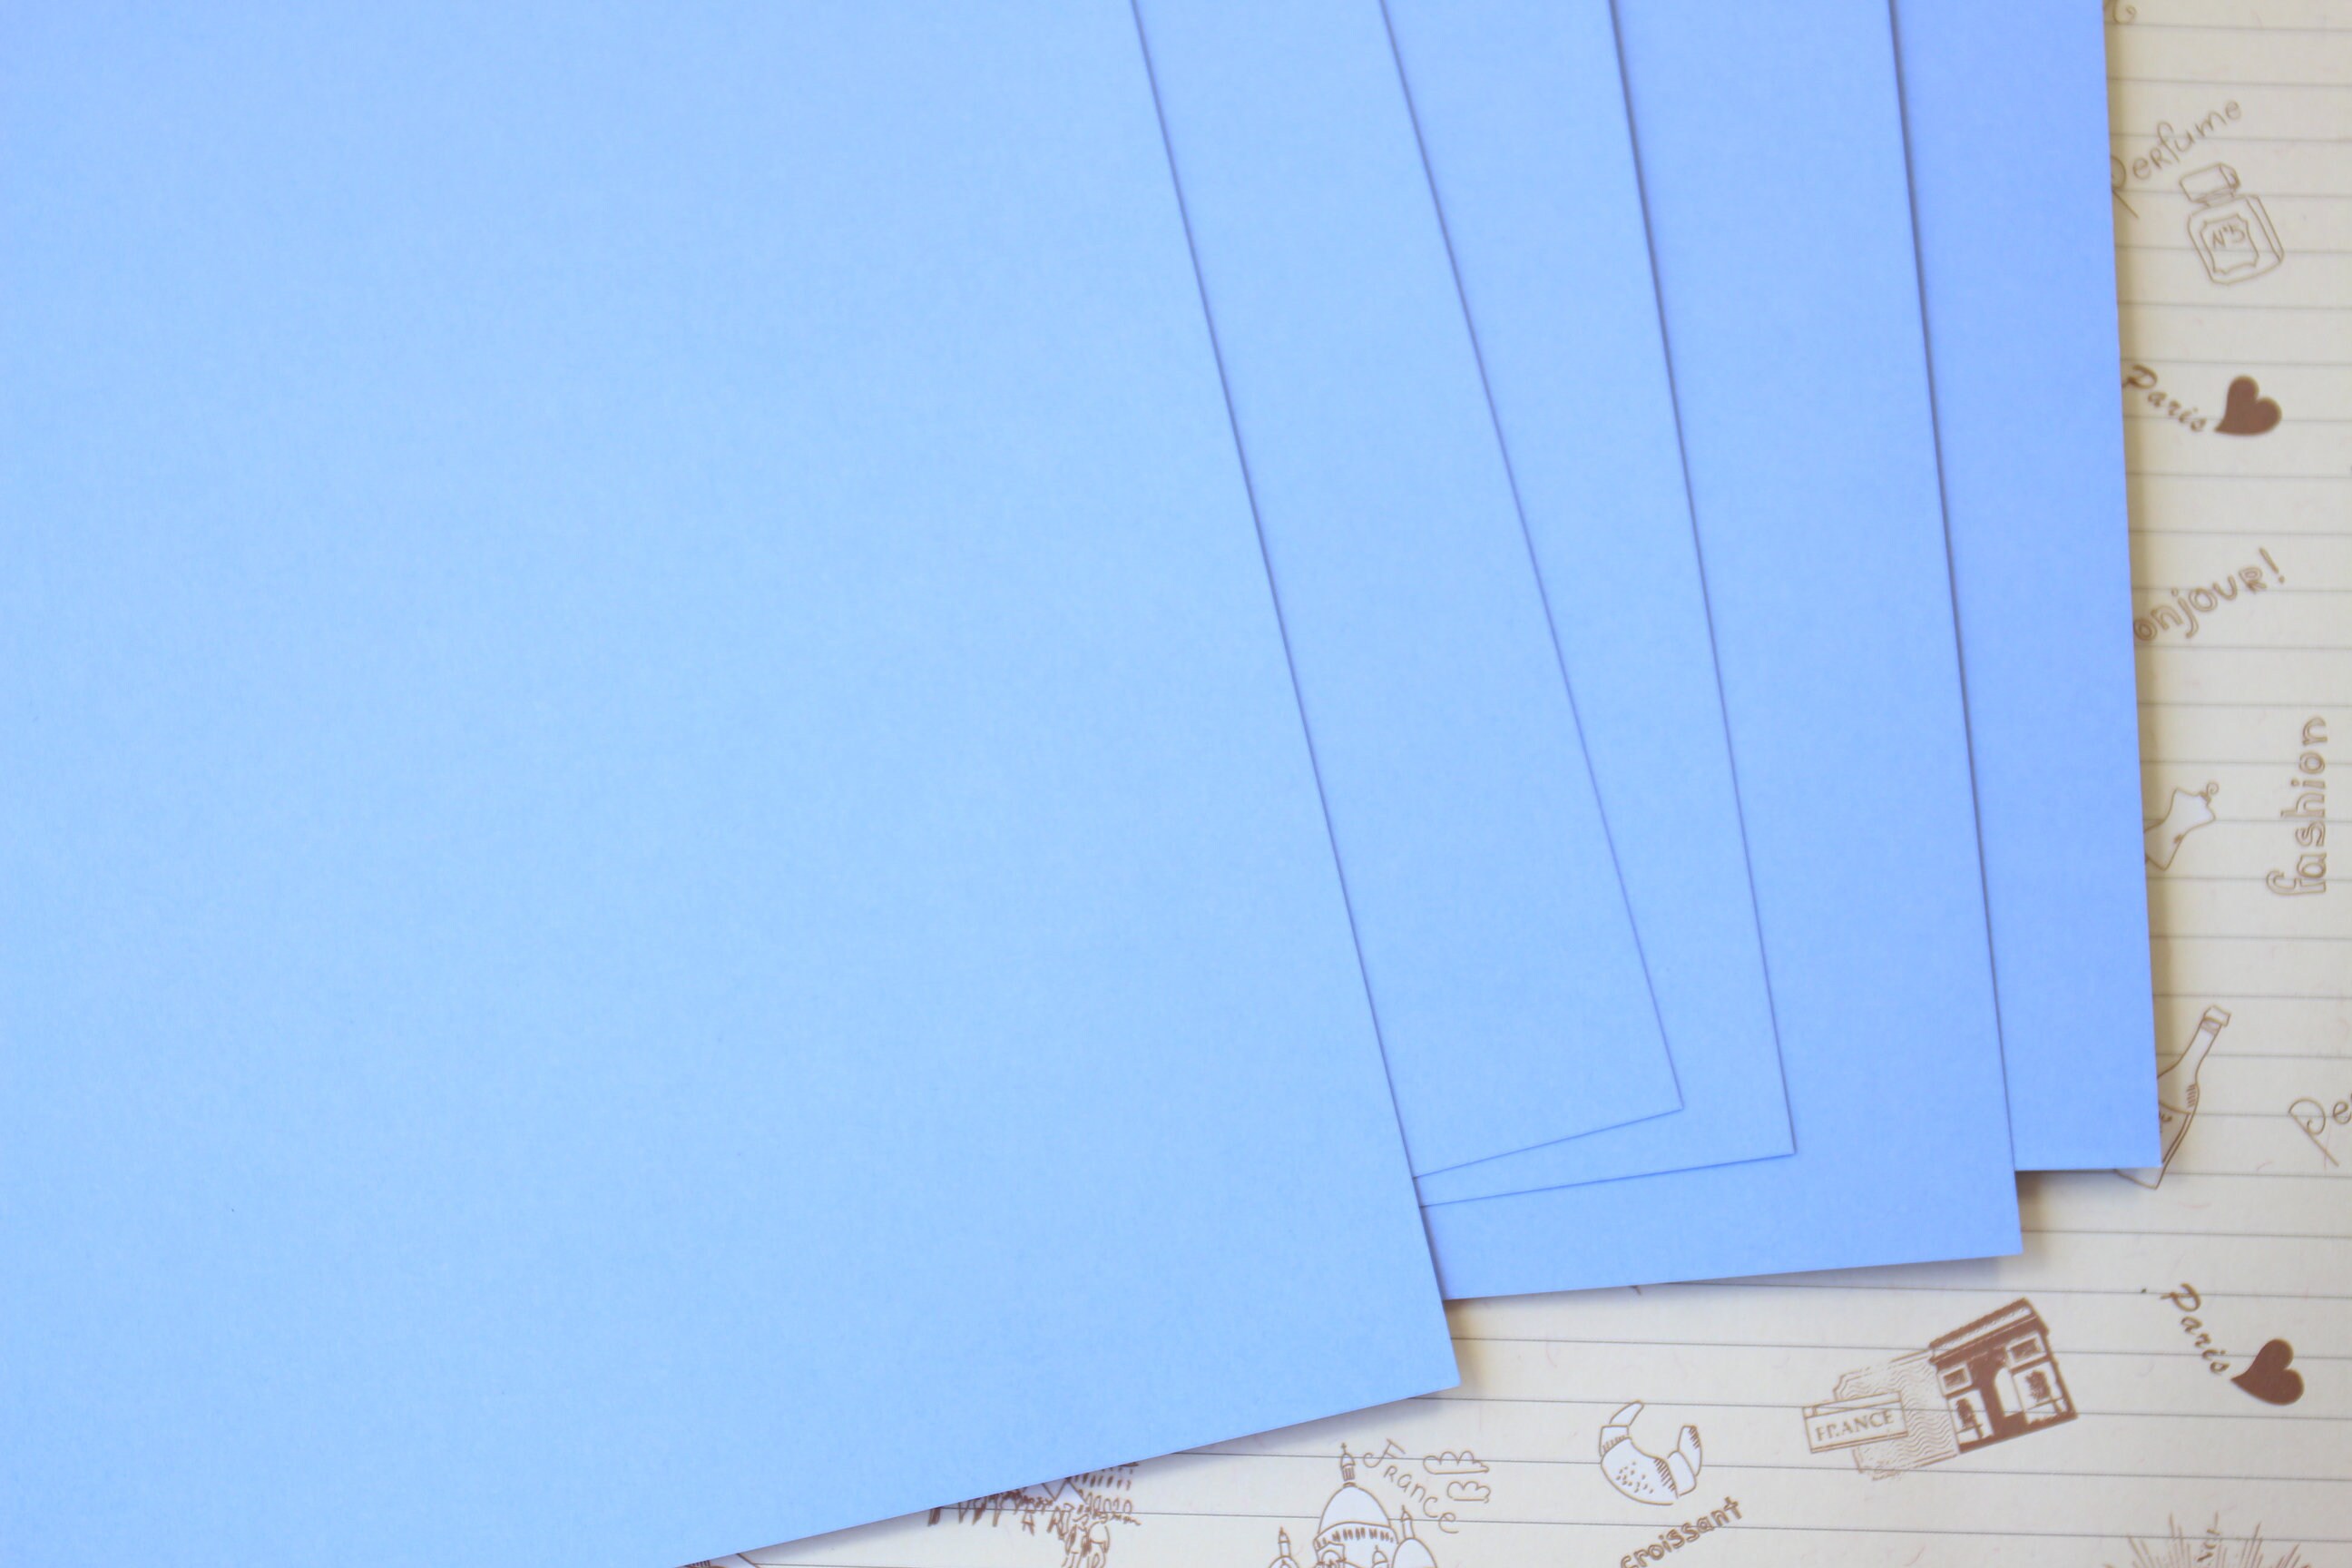 Cartoncino colorato blu polvere opaco da 240 g/m² -  Italia